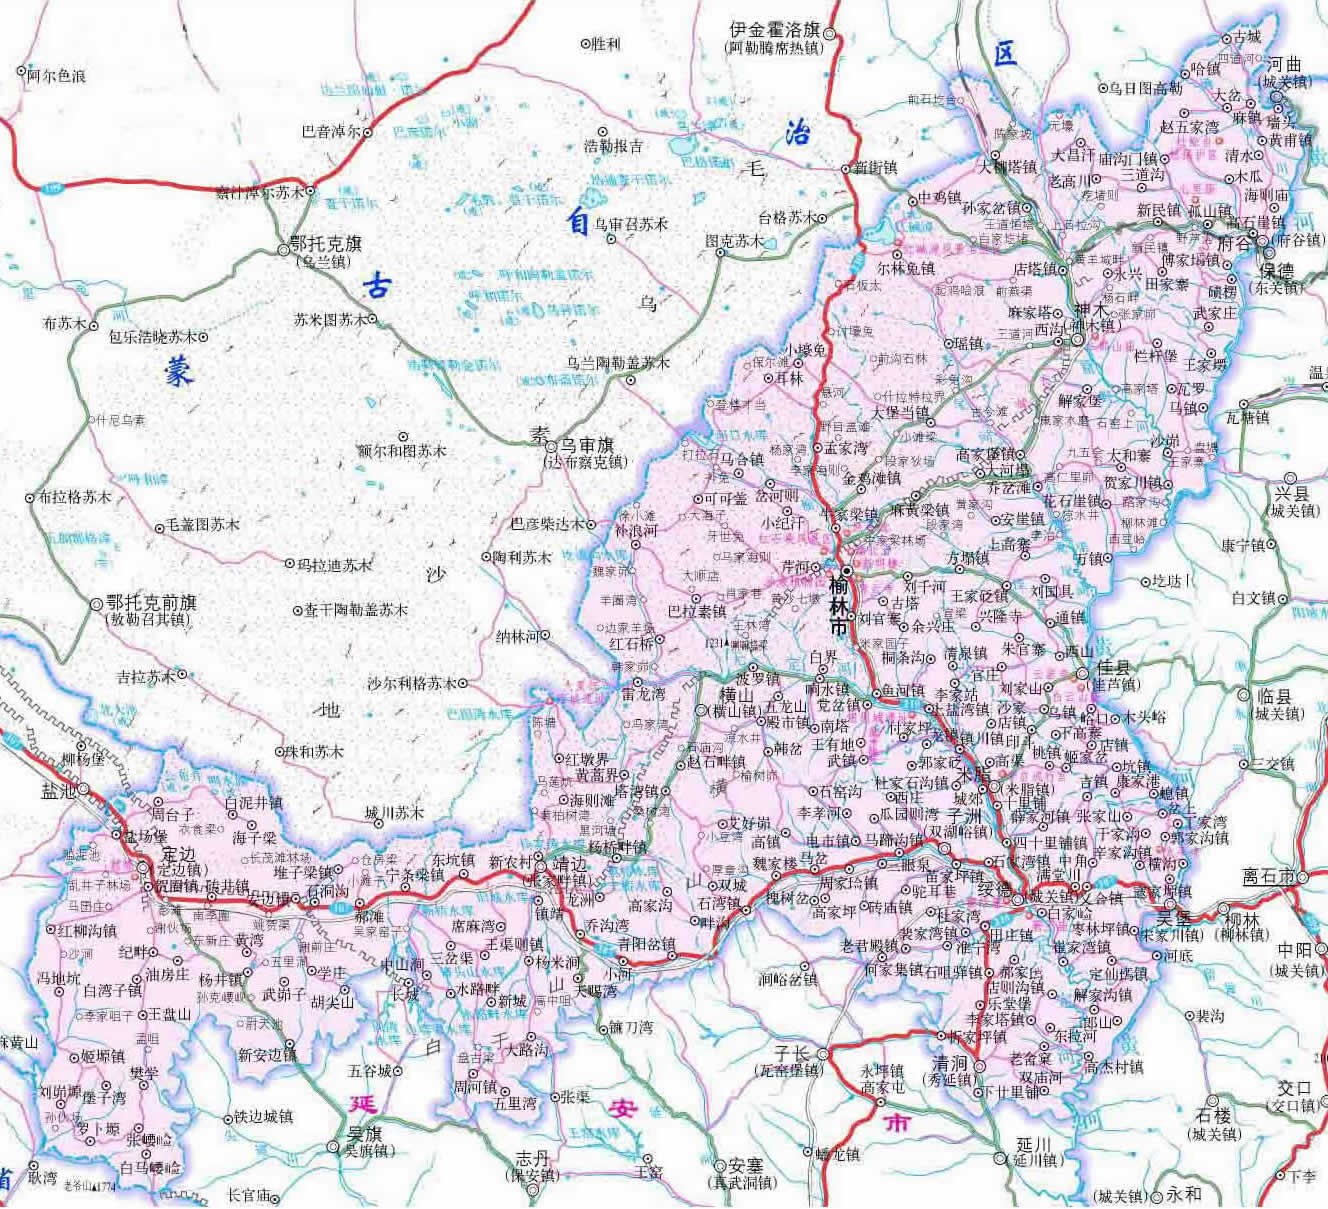 榆林市行政区划,交通地图,人口面积,历史沿革,风景,等